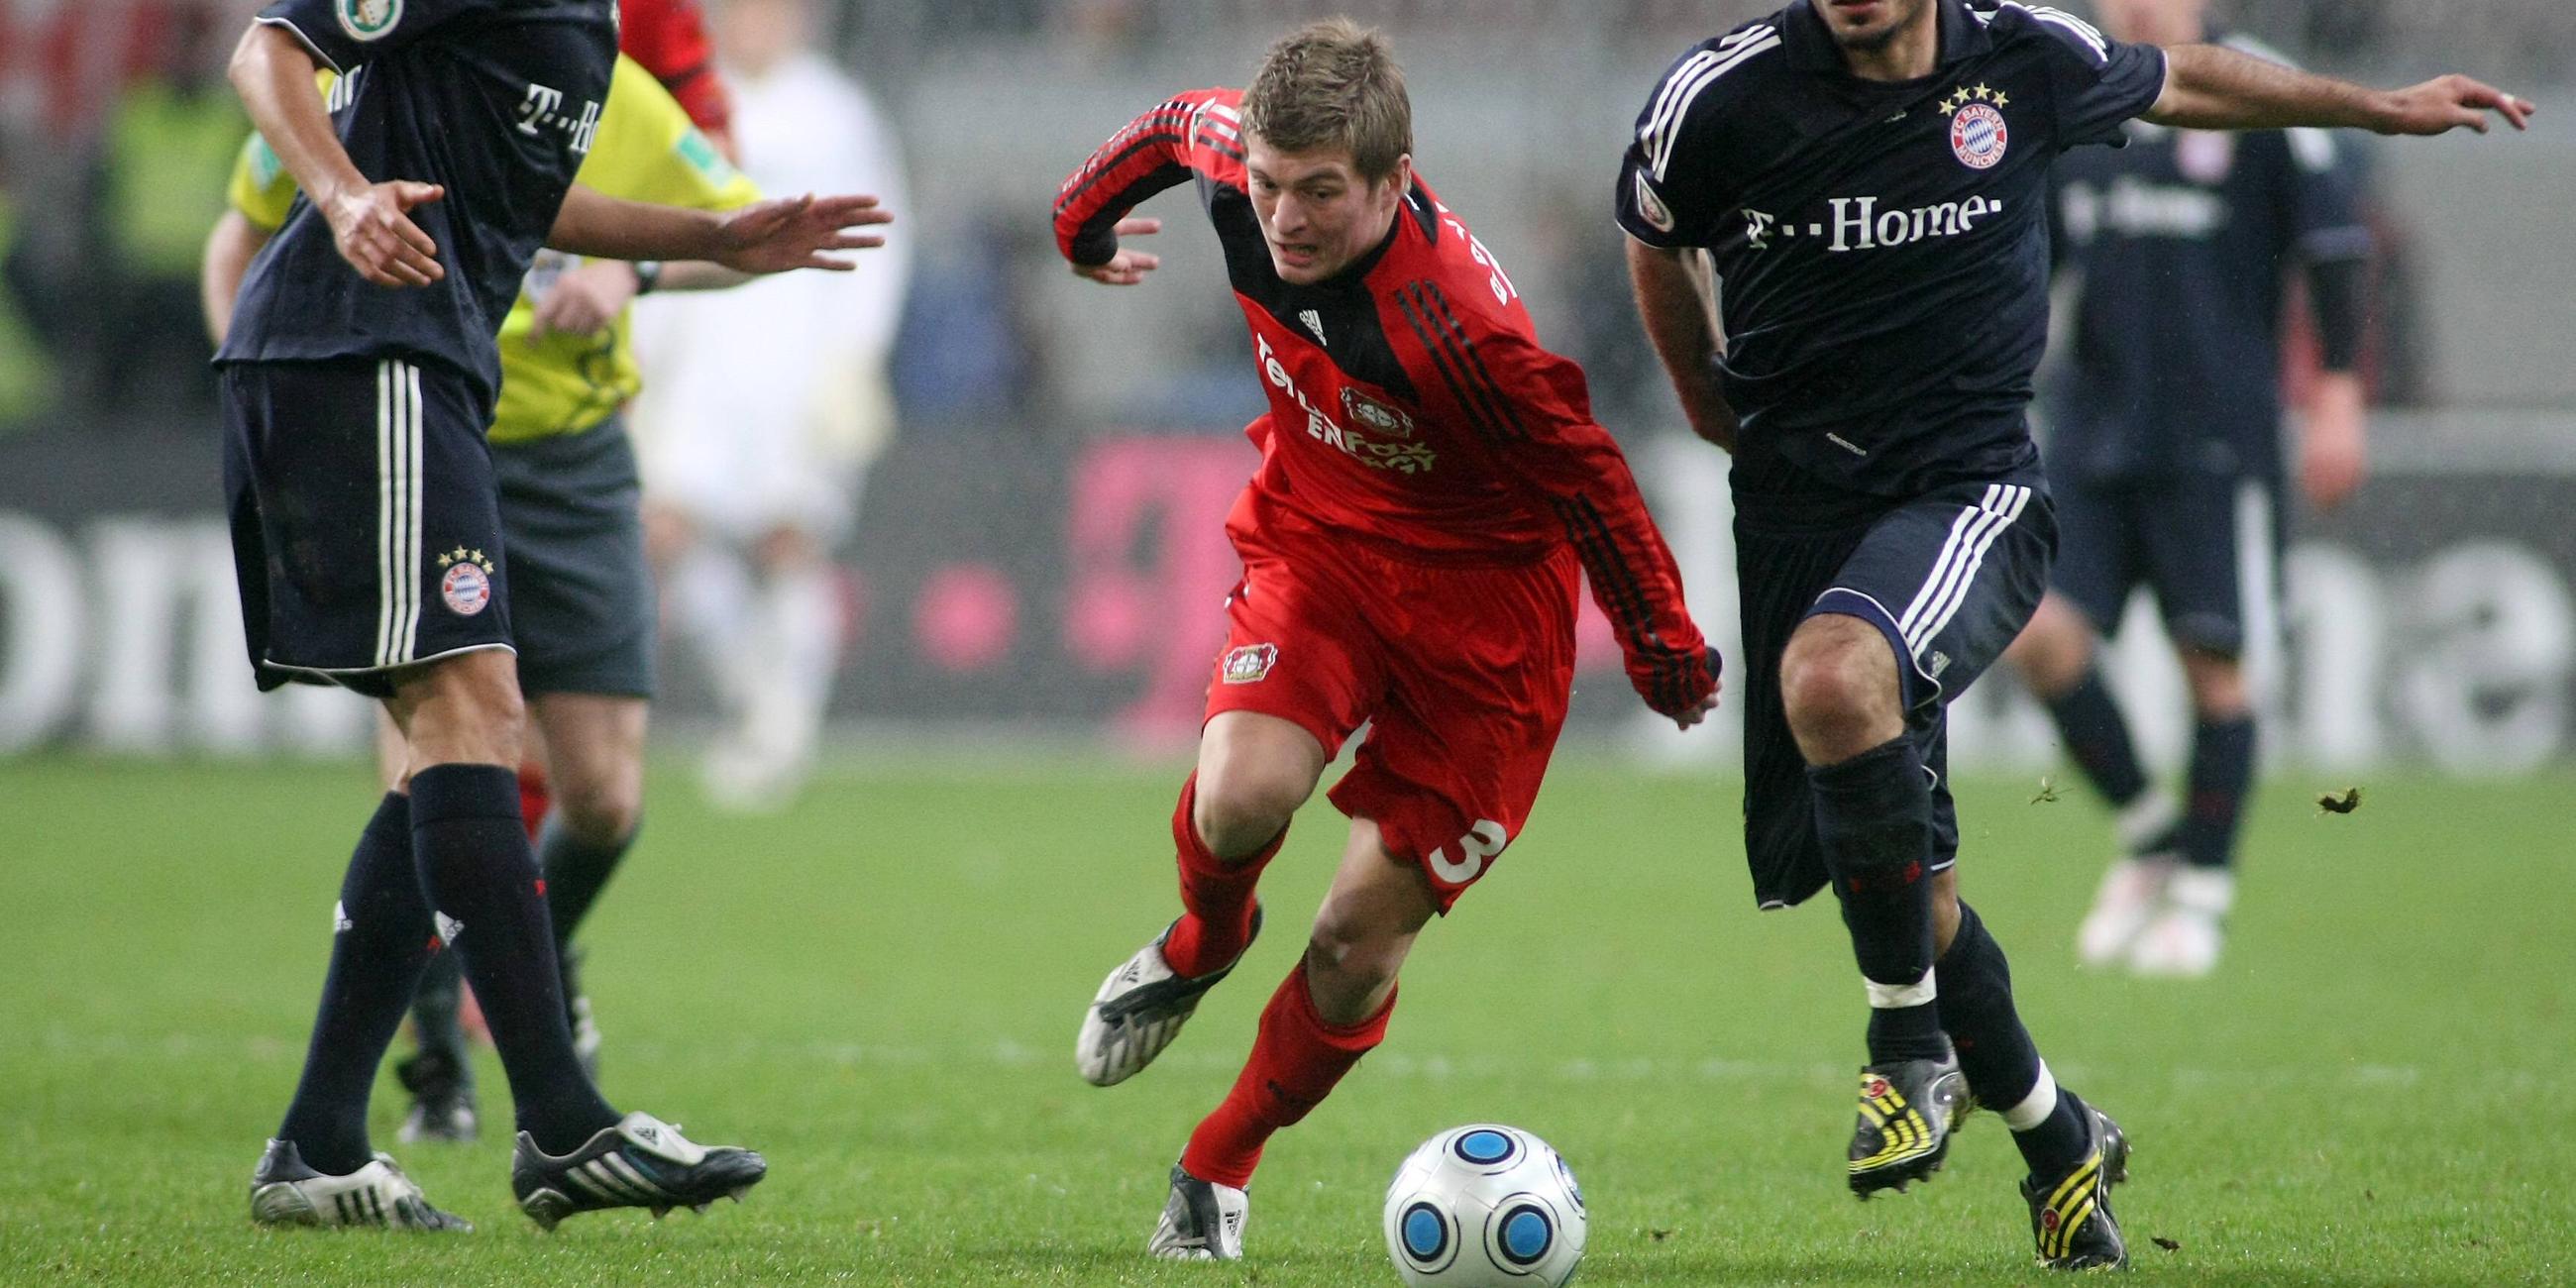 Leihe nach Leverkusen von Januar 2009 bis Juli 2010; 4:2-Sieg im DFB-Pokal gegen Bayern München 2009